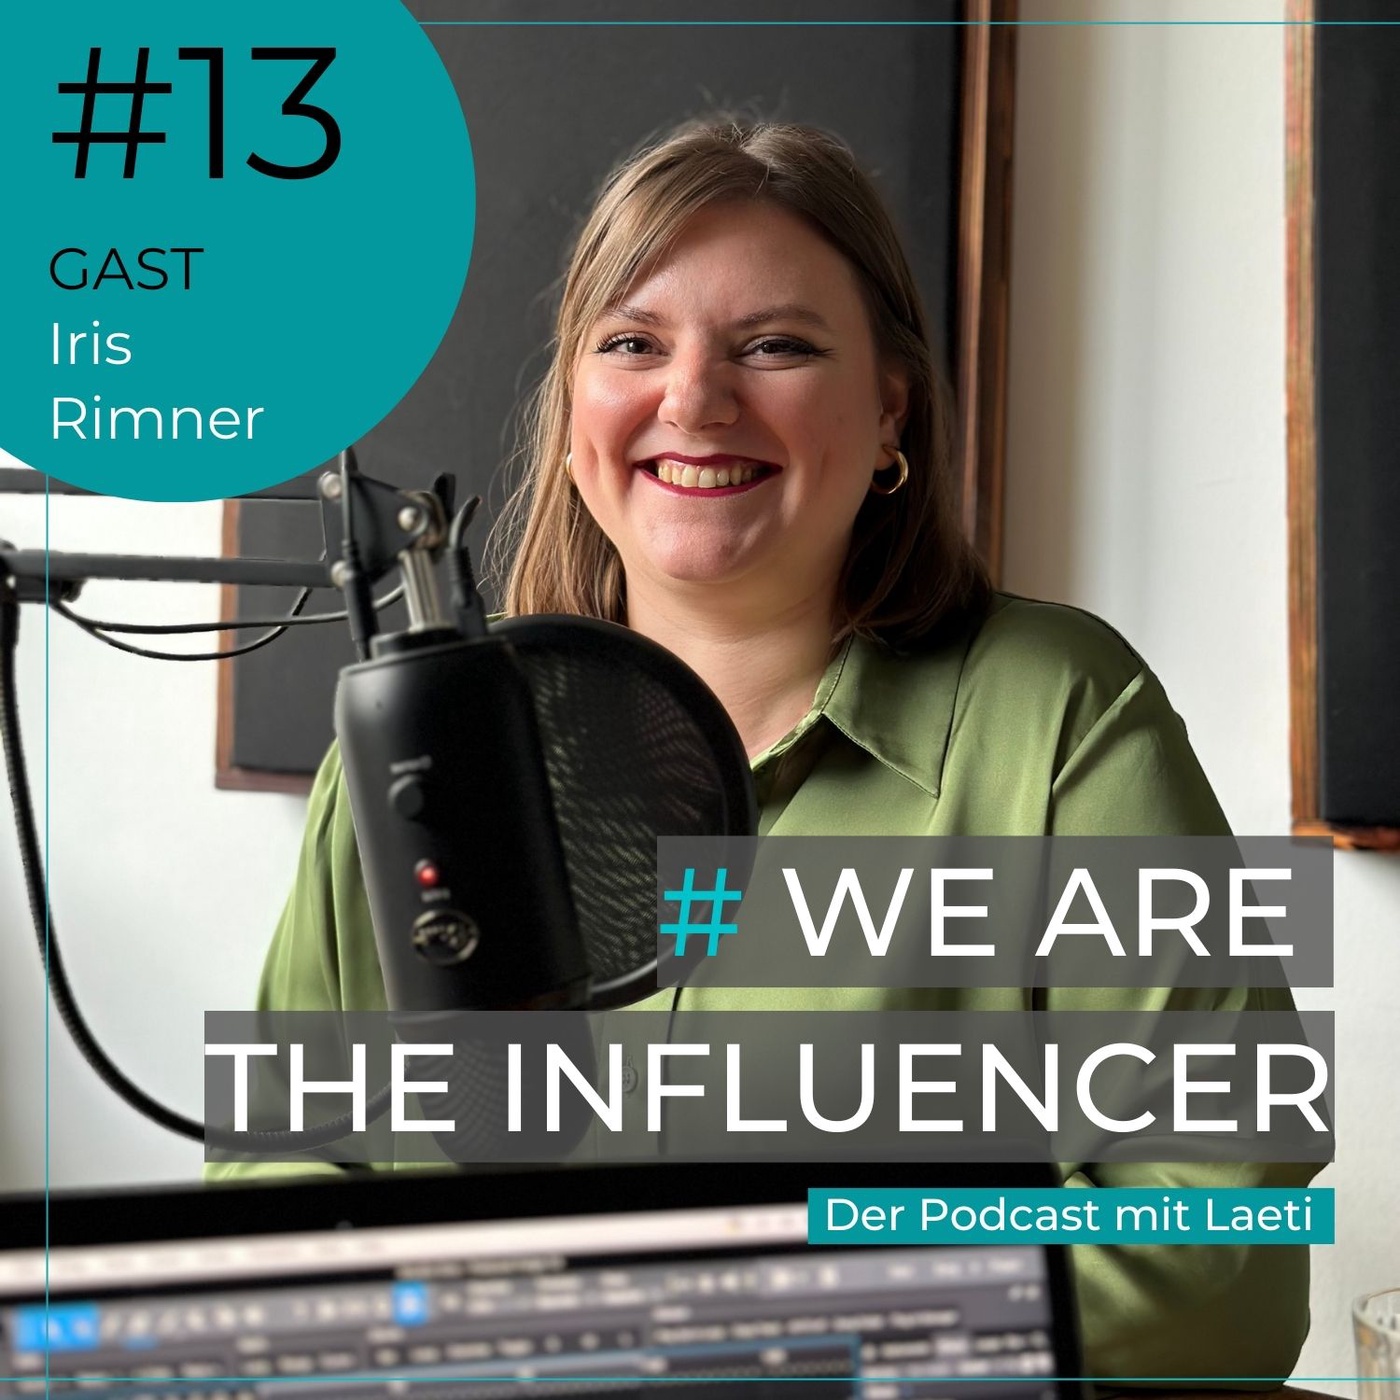 #13 Arbeiten bei the influencer: So abwechslungsreich ist unser Agenturalltag | Iris Rimner